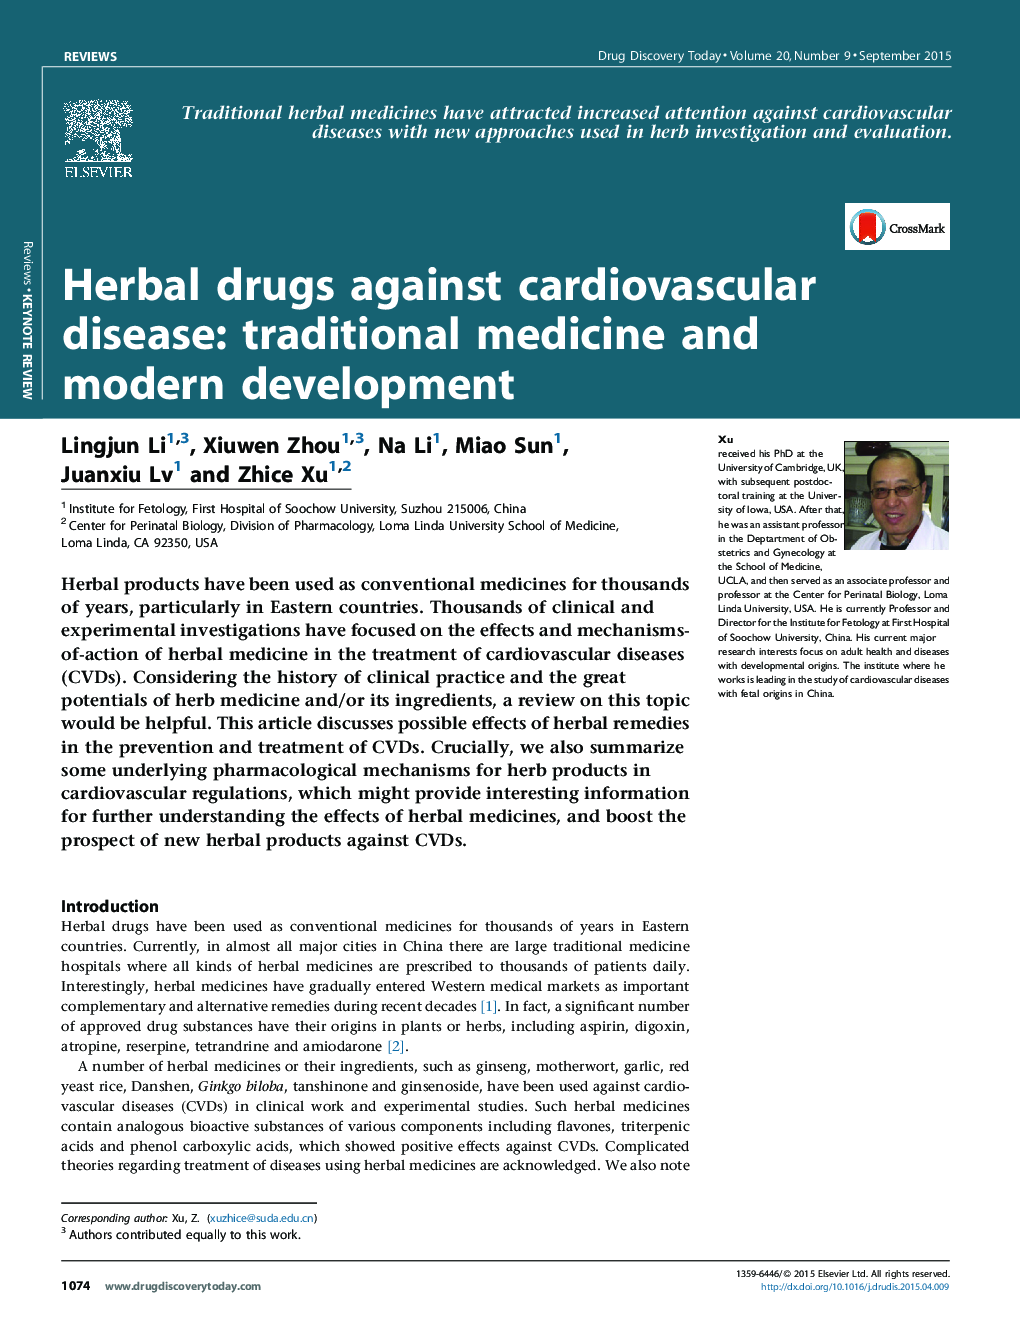 داروهای گیاهی علیه بیماری های قلبی عروقی: طب سنتی و توسعه مدرن 